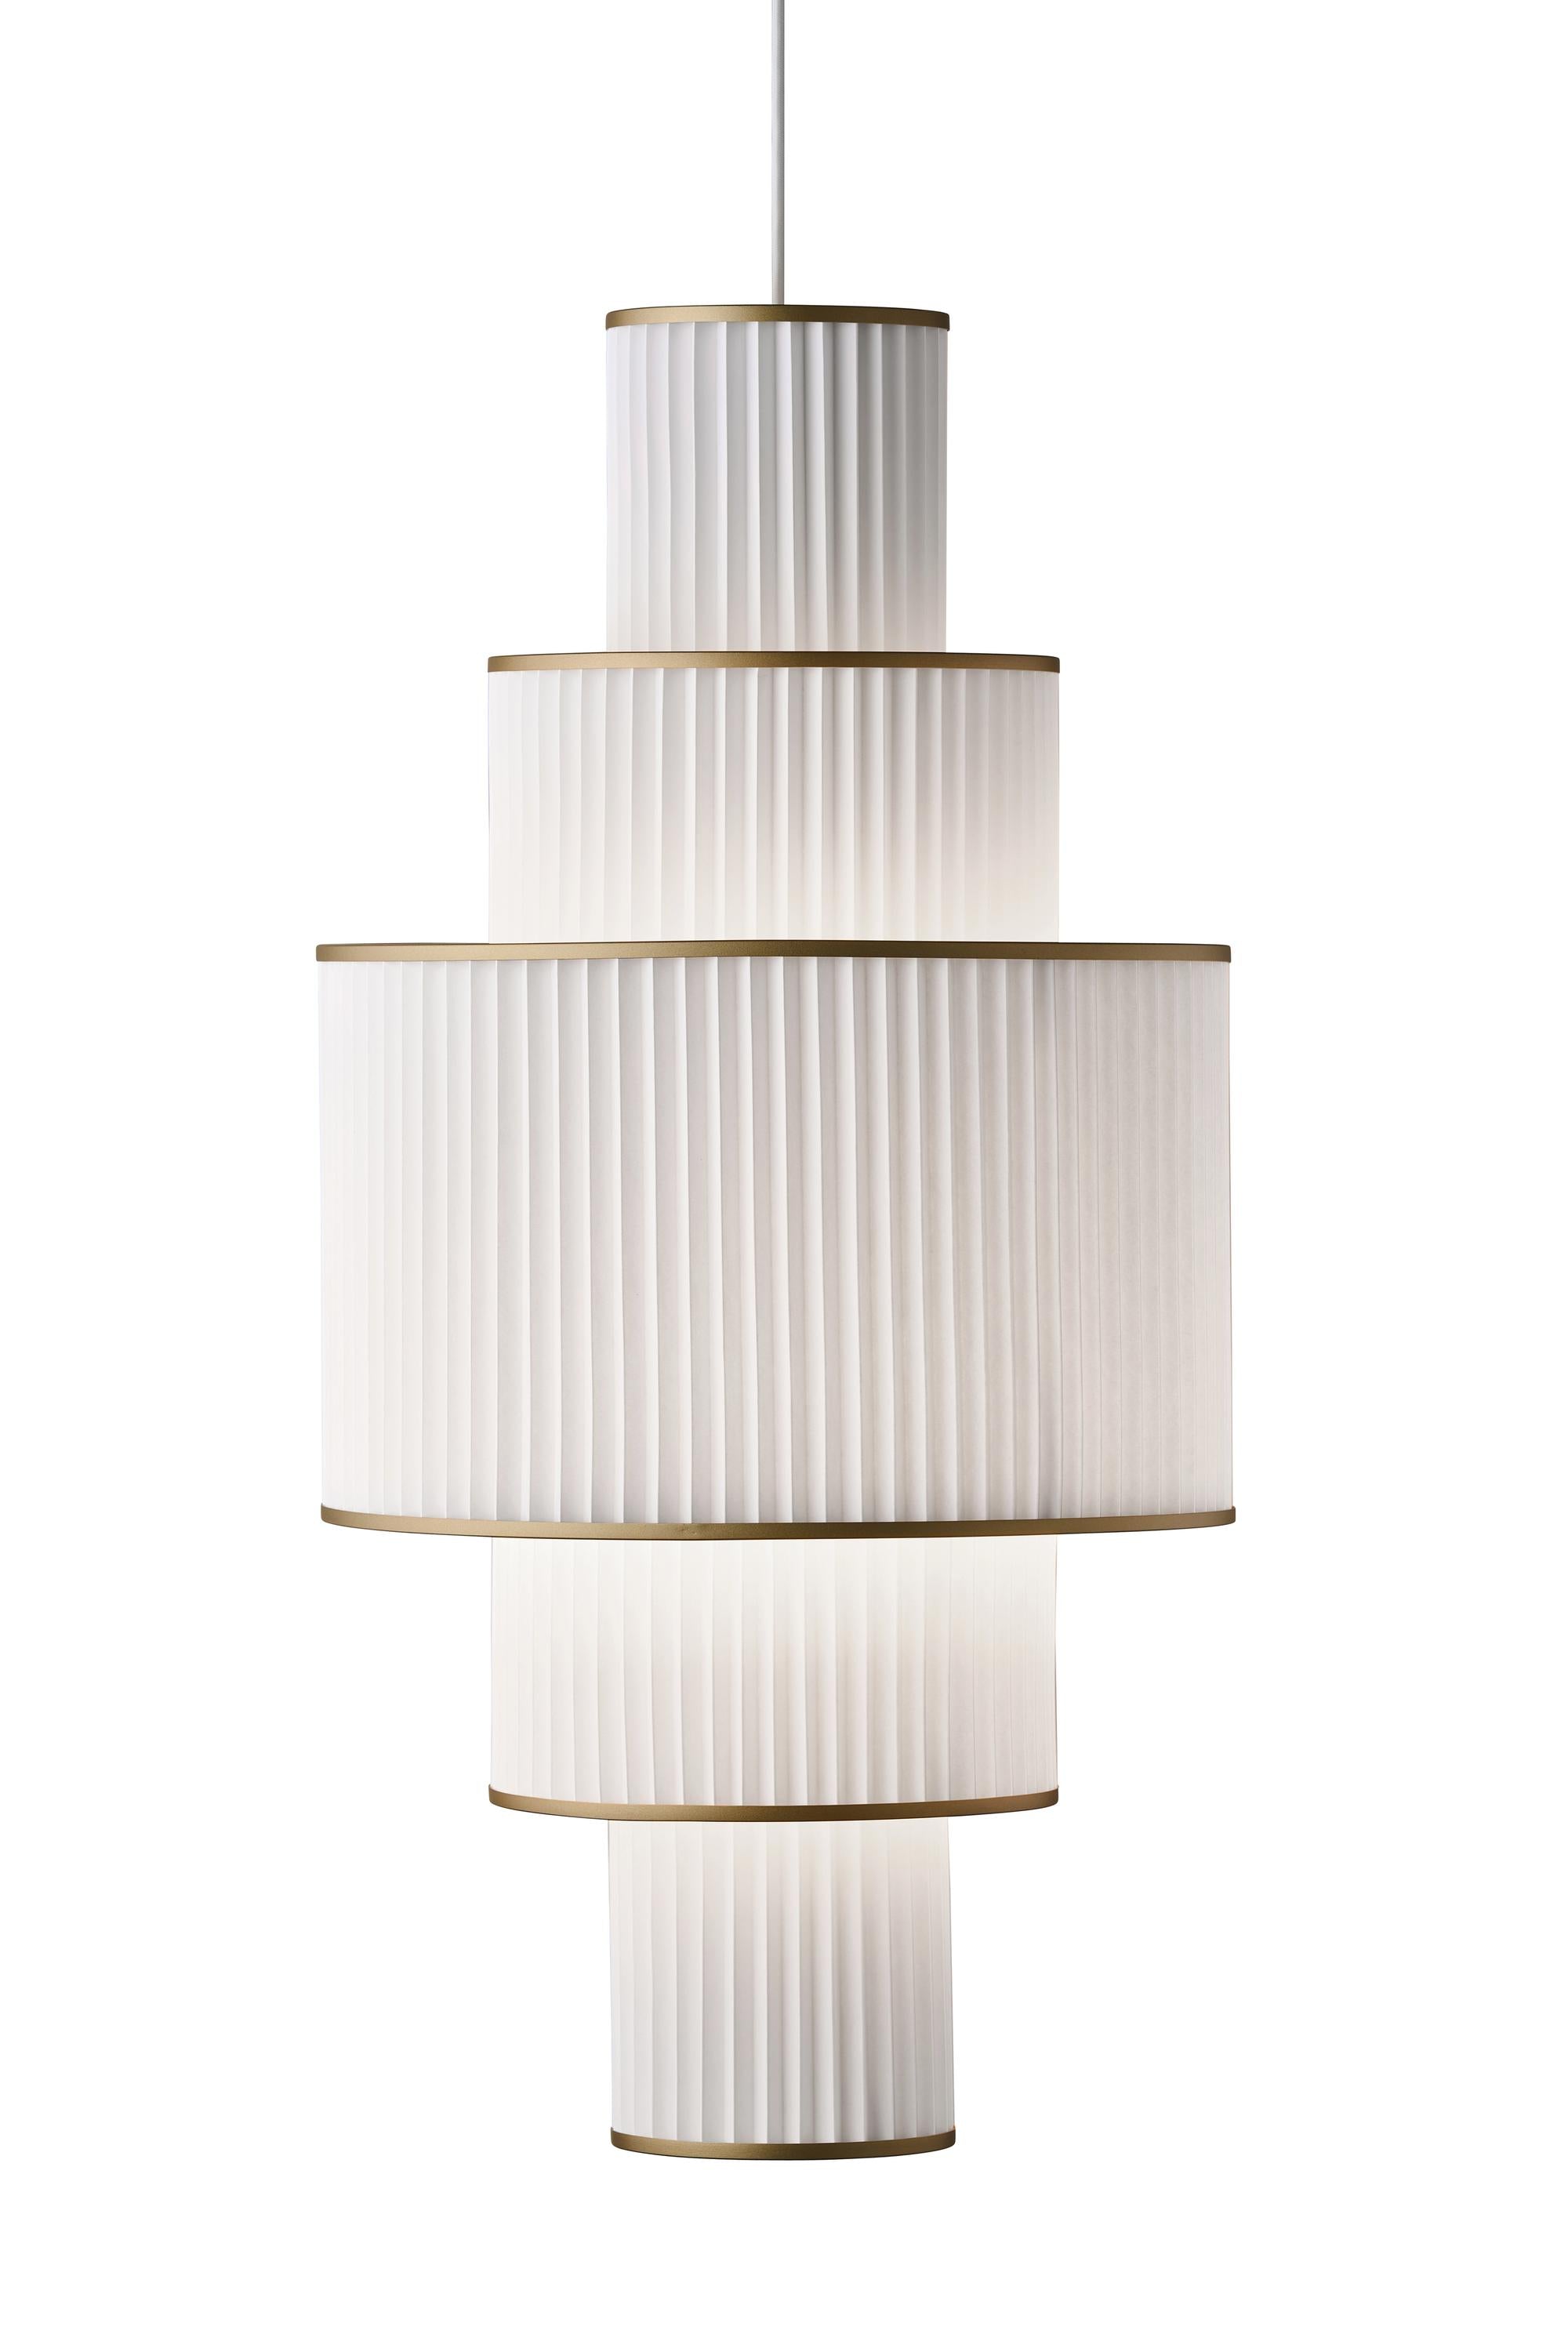 Le Klint Plivello Lámpara de suspensión dorada/blanca con 5 tonos (s m l m s)